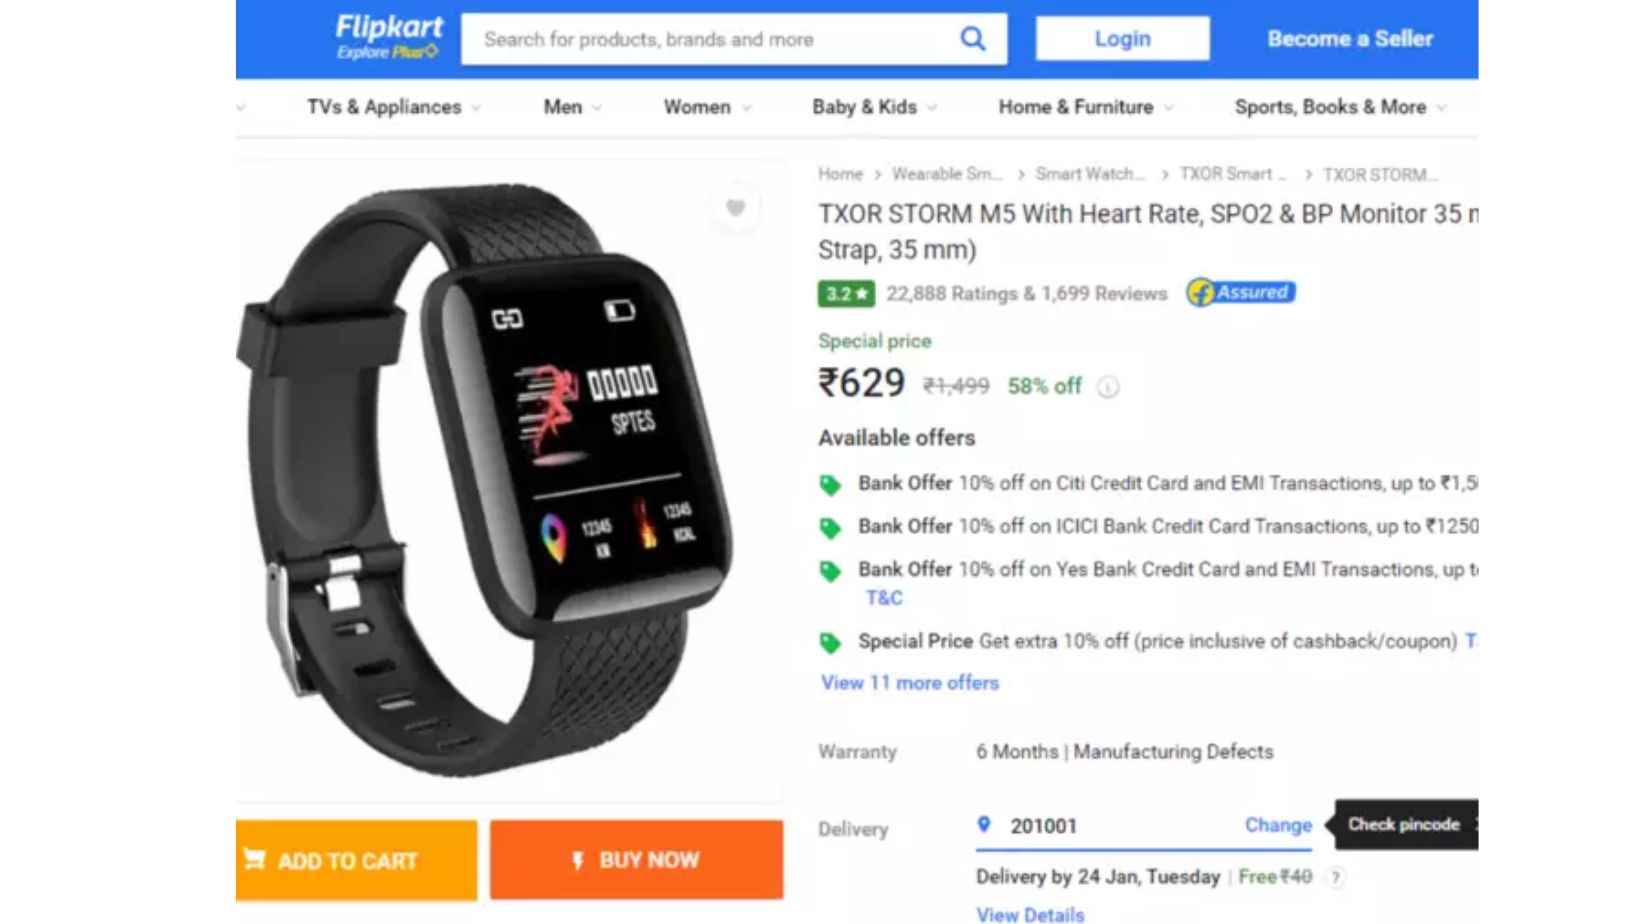 Flipkart smartwatch offer